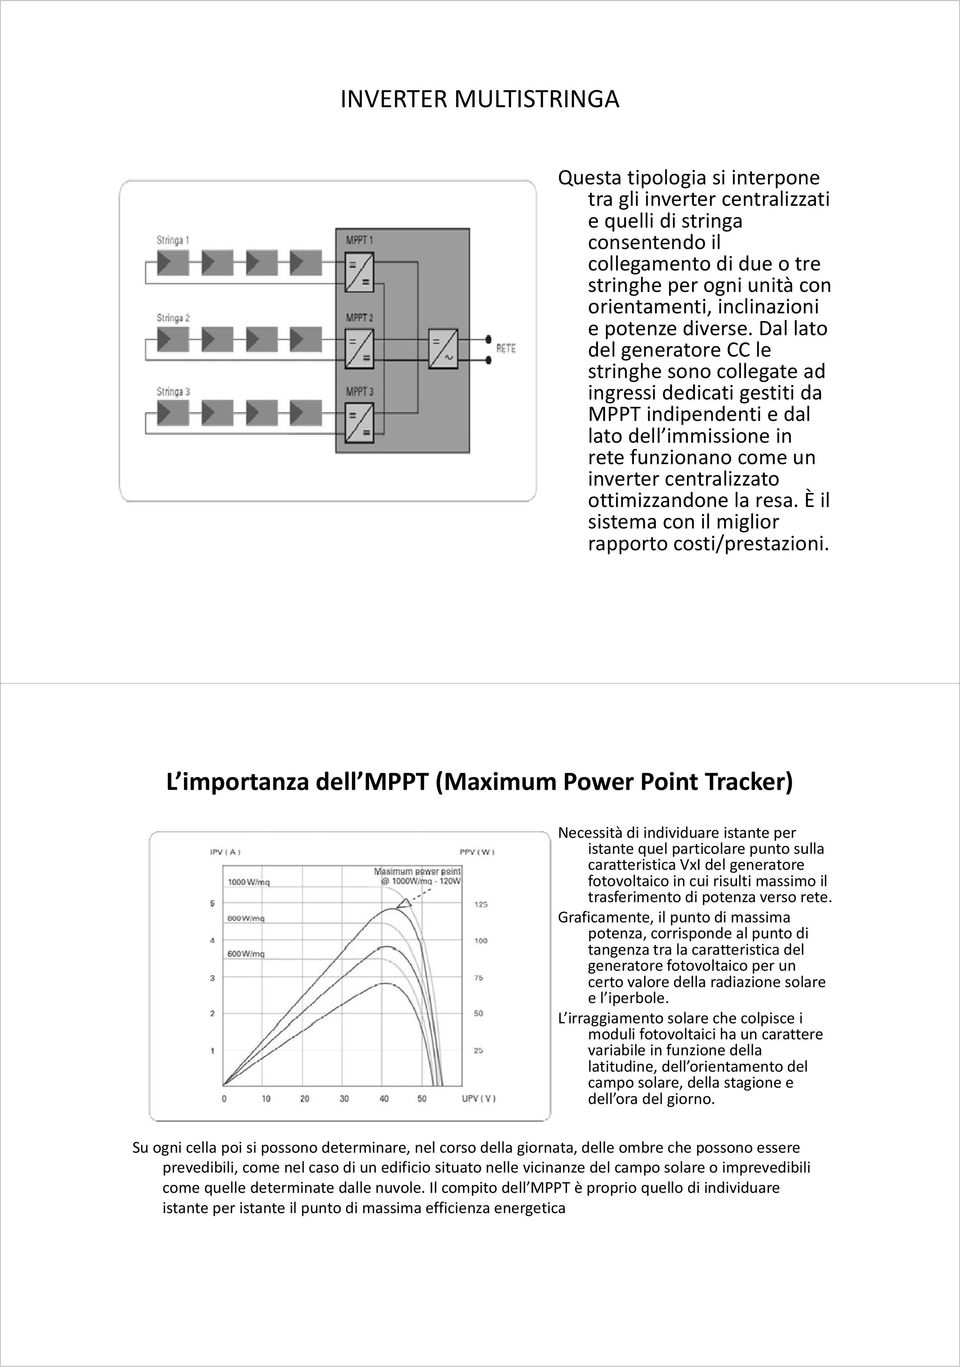 Dal lato dl del generatore CC le stringhe sono collegate ad ingressi dedicati gestiti da MPPT indipendenti e dal lato dell immissione in rete funzionano come un inverter centralizzato ottimizzandone